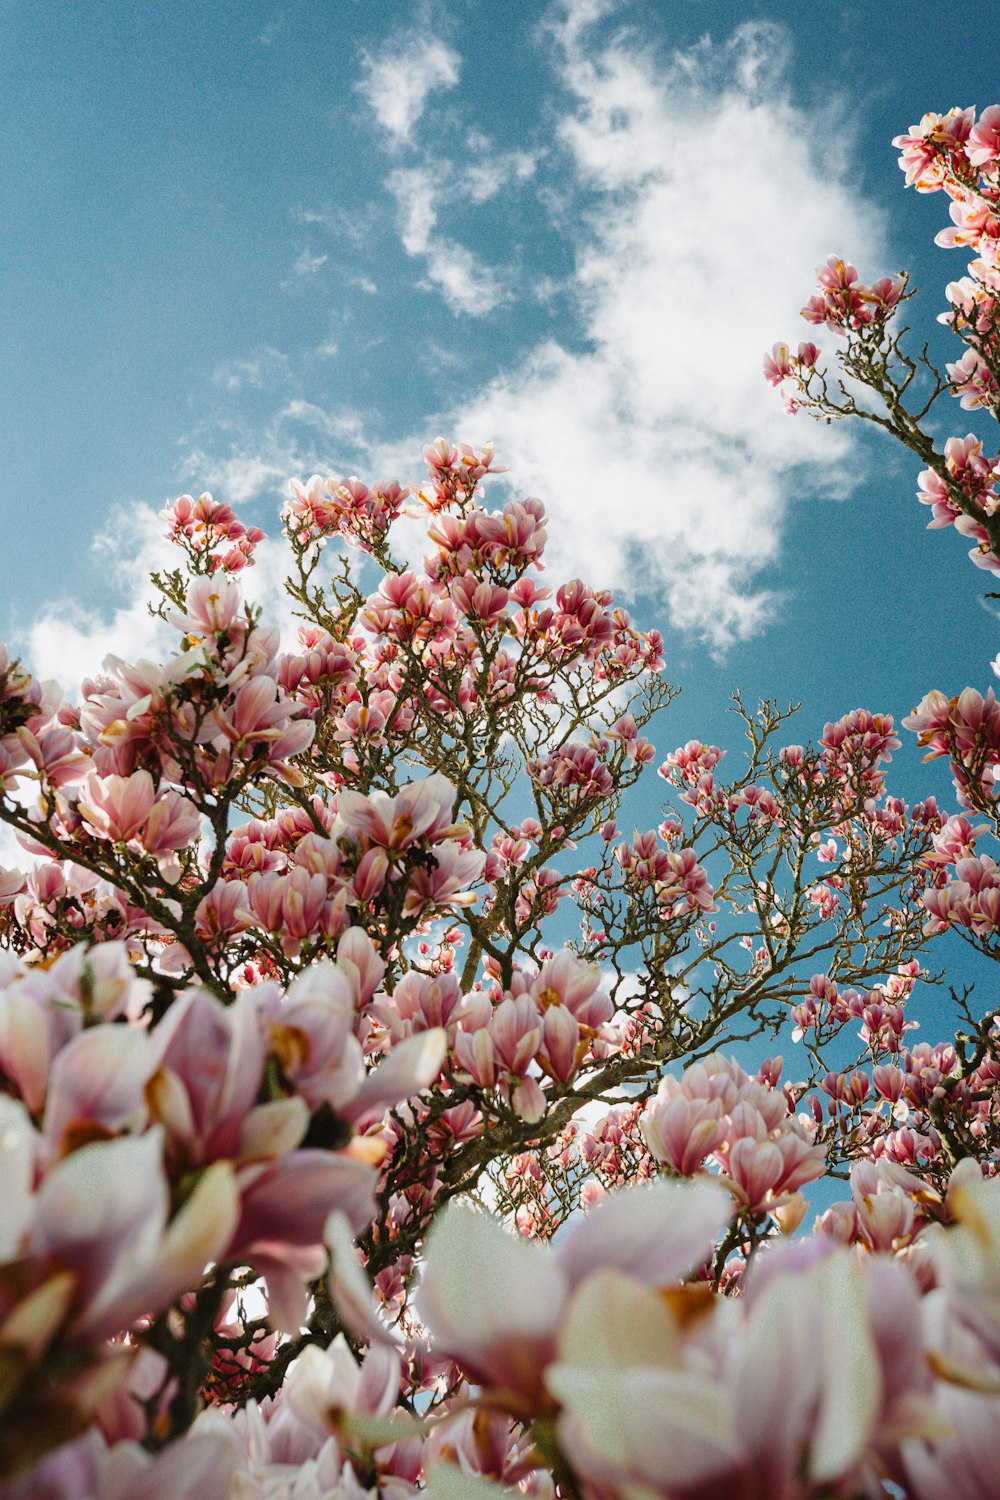 fiore rosa e bianco sotto il cielo blu durante il giorno